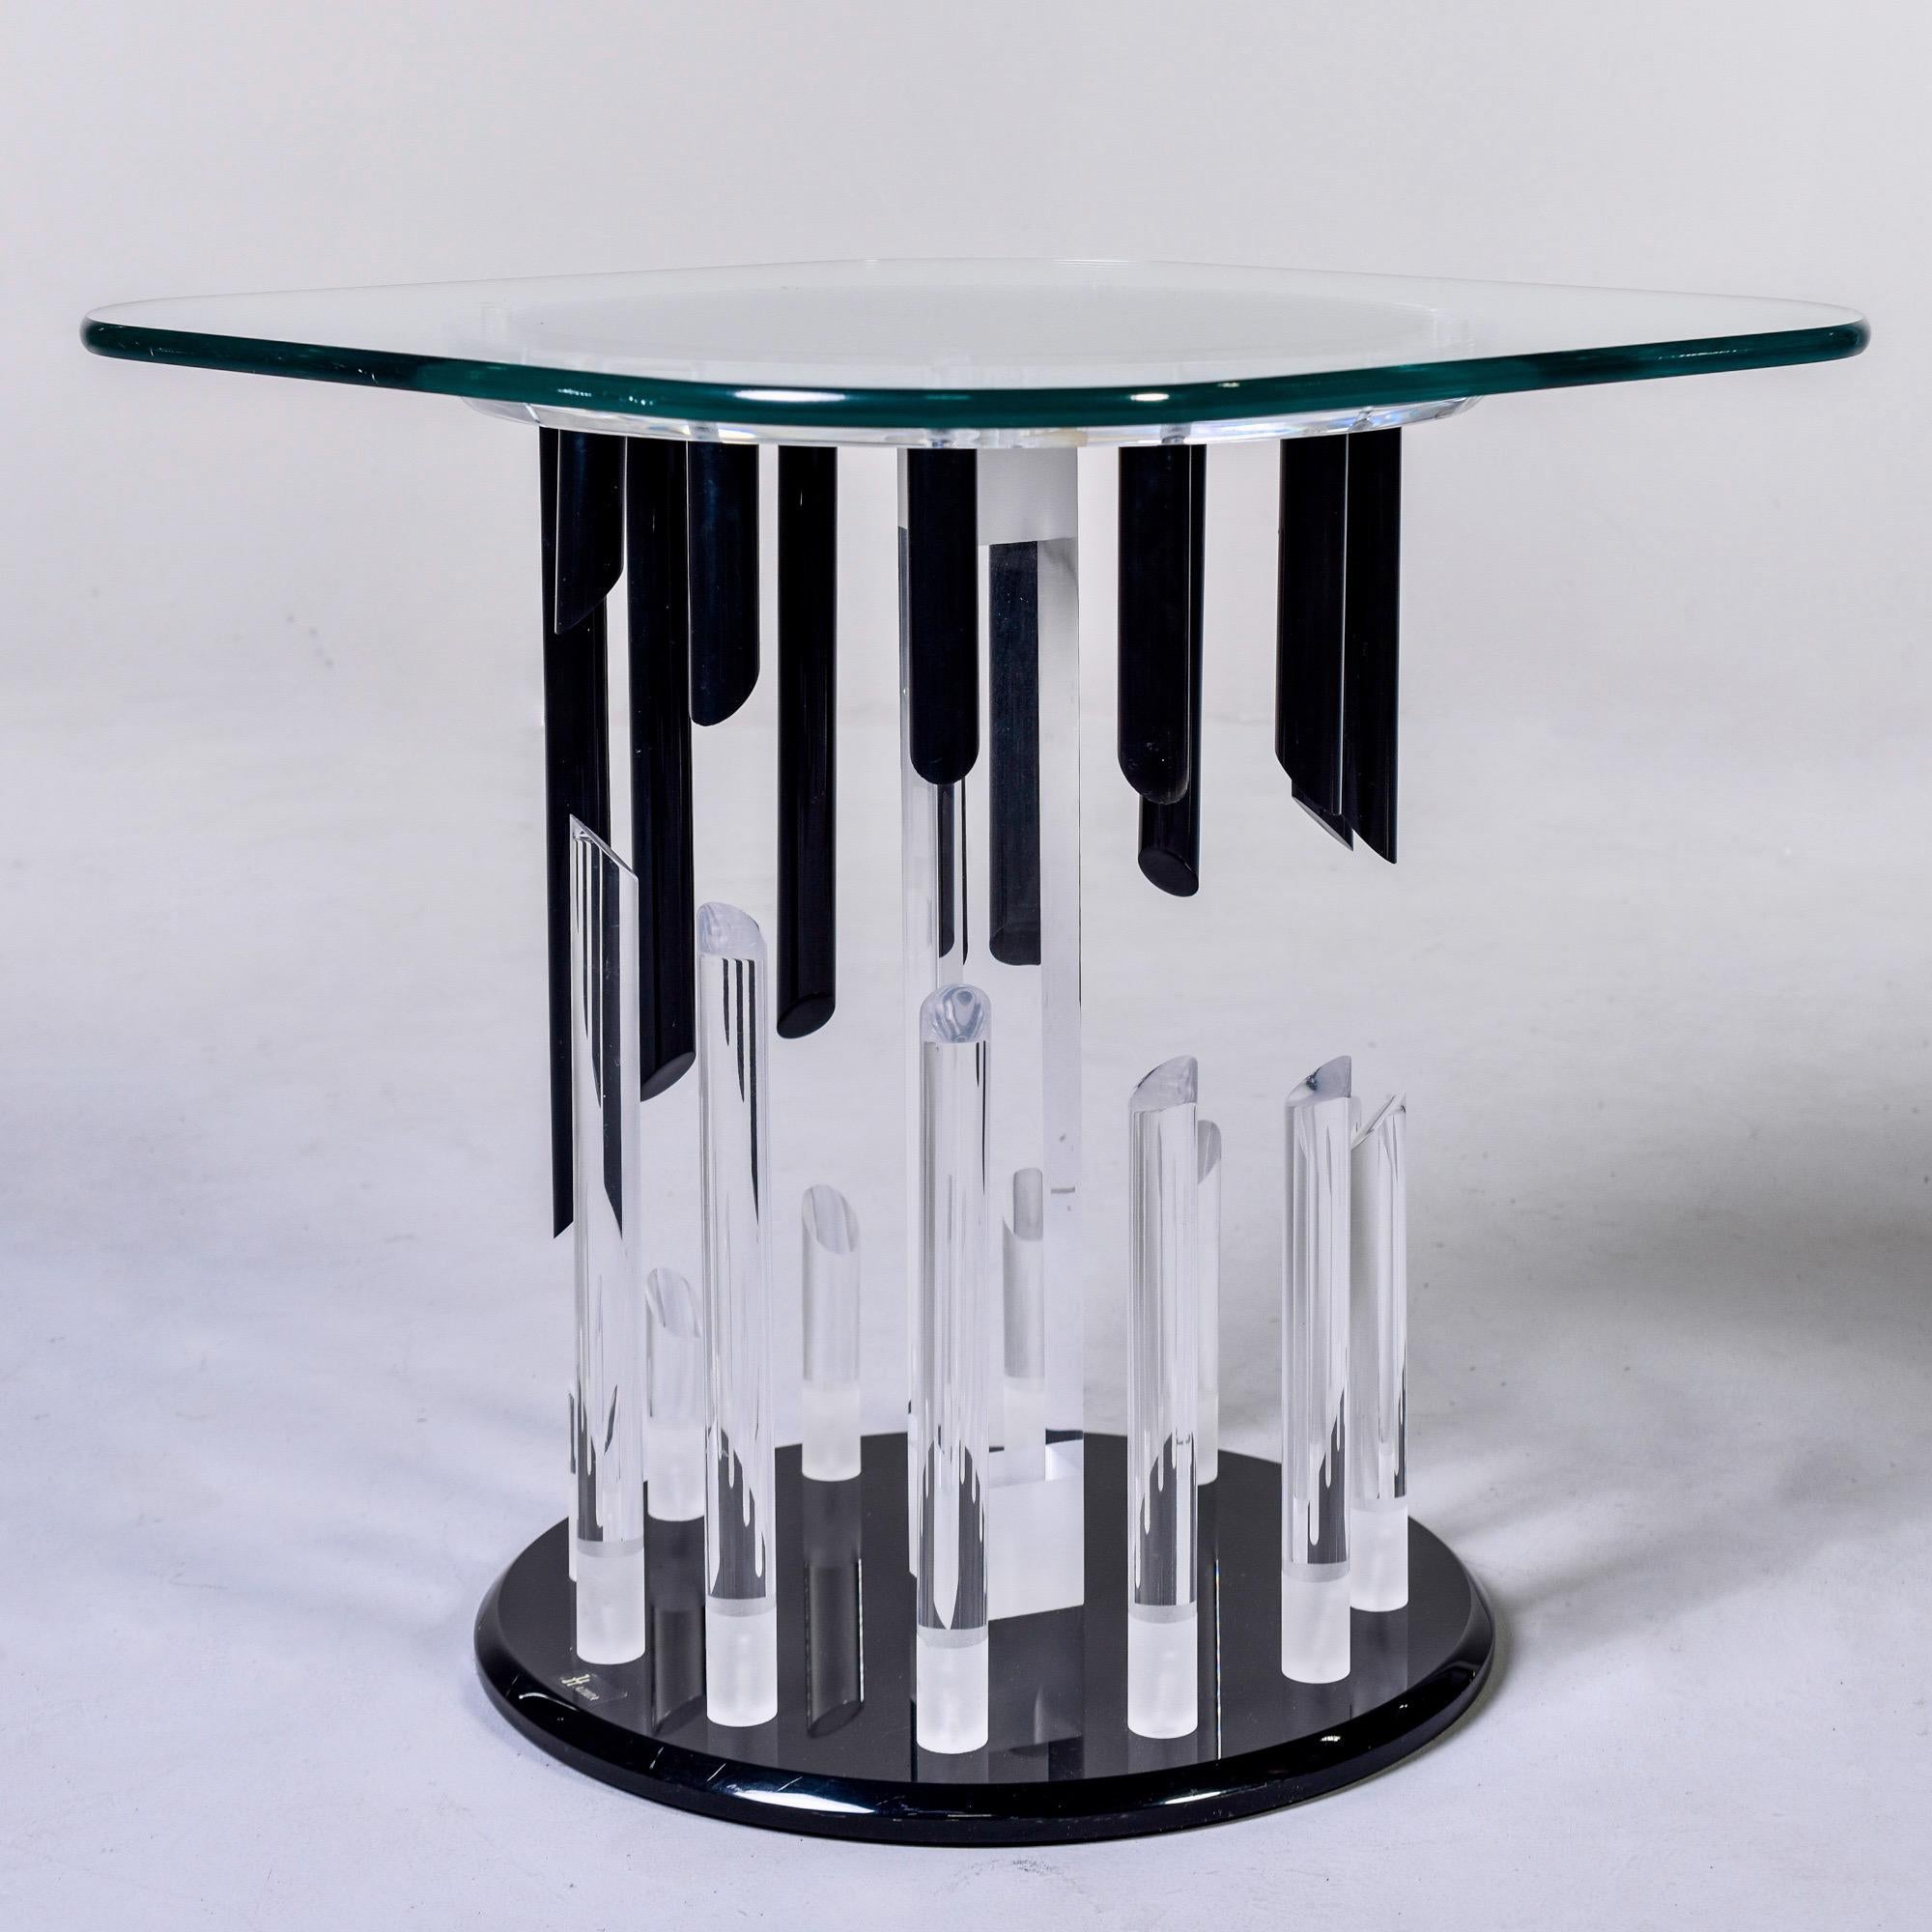 Table d'appoint avec une base en Lucite par Haziza, vers les années 1980. La table a une base en Lucite noir avec des tiges en Lucite transparent et noir avec des extrémités coupées en diagonale qui forment un motif abstrait. Le dessus de la base